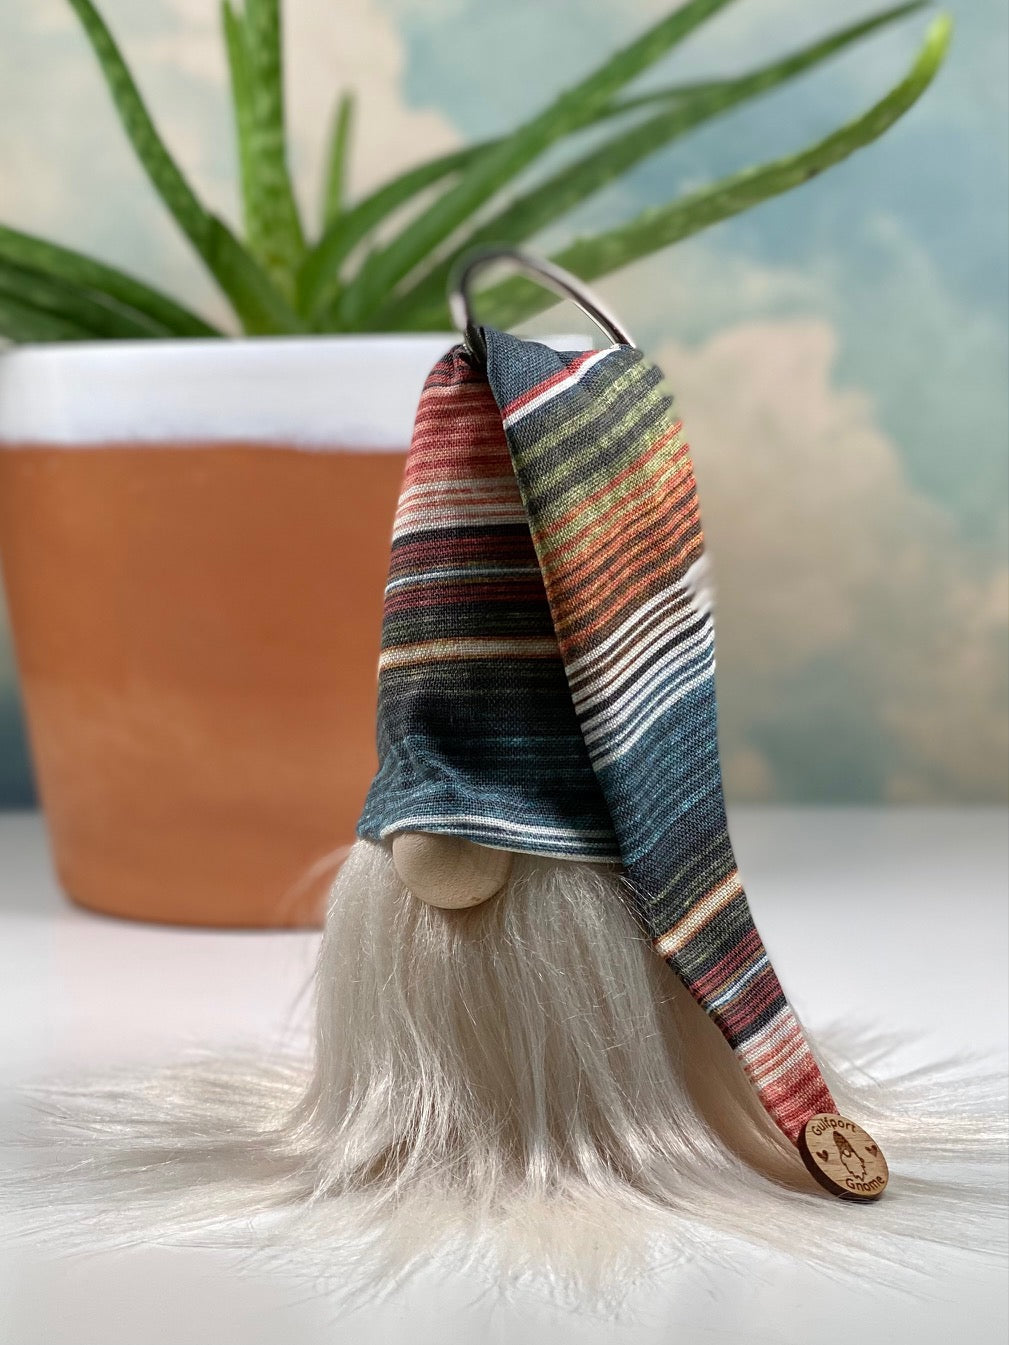 DIY Gulfport Gnome™ - Make Your Own Texas Serape Collectible Decor- 4" Plush Gnome - Multi Colored Desert Decor